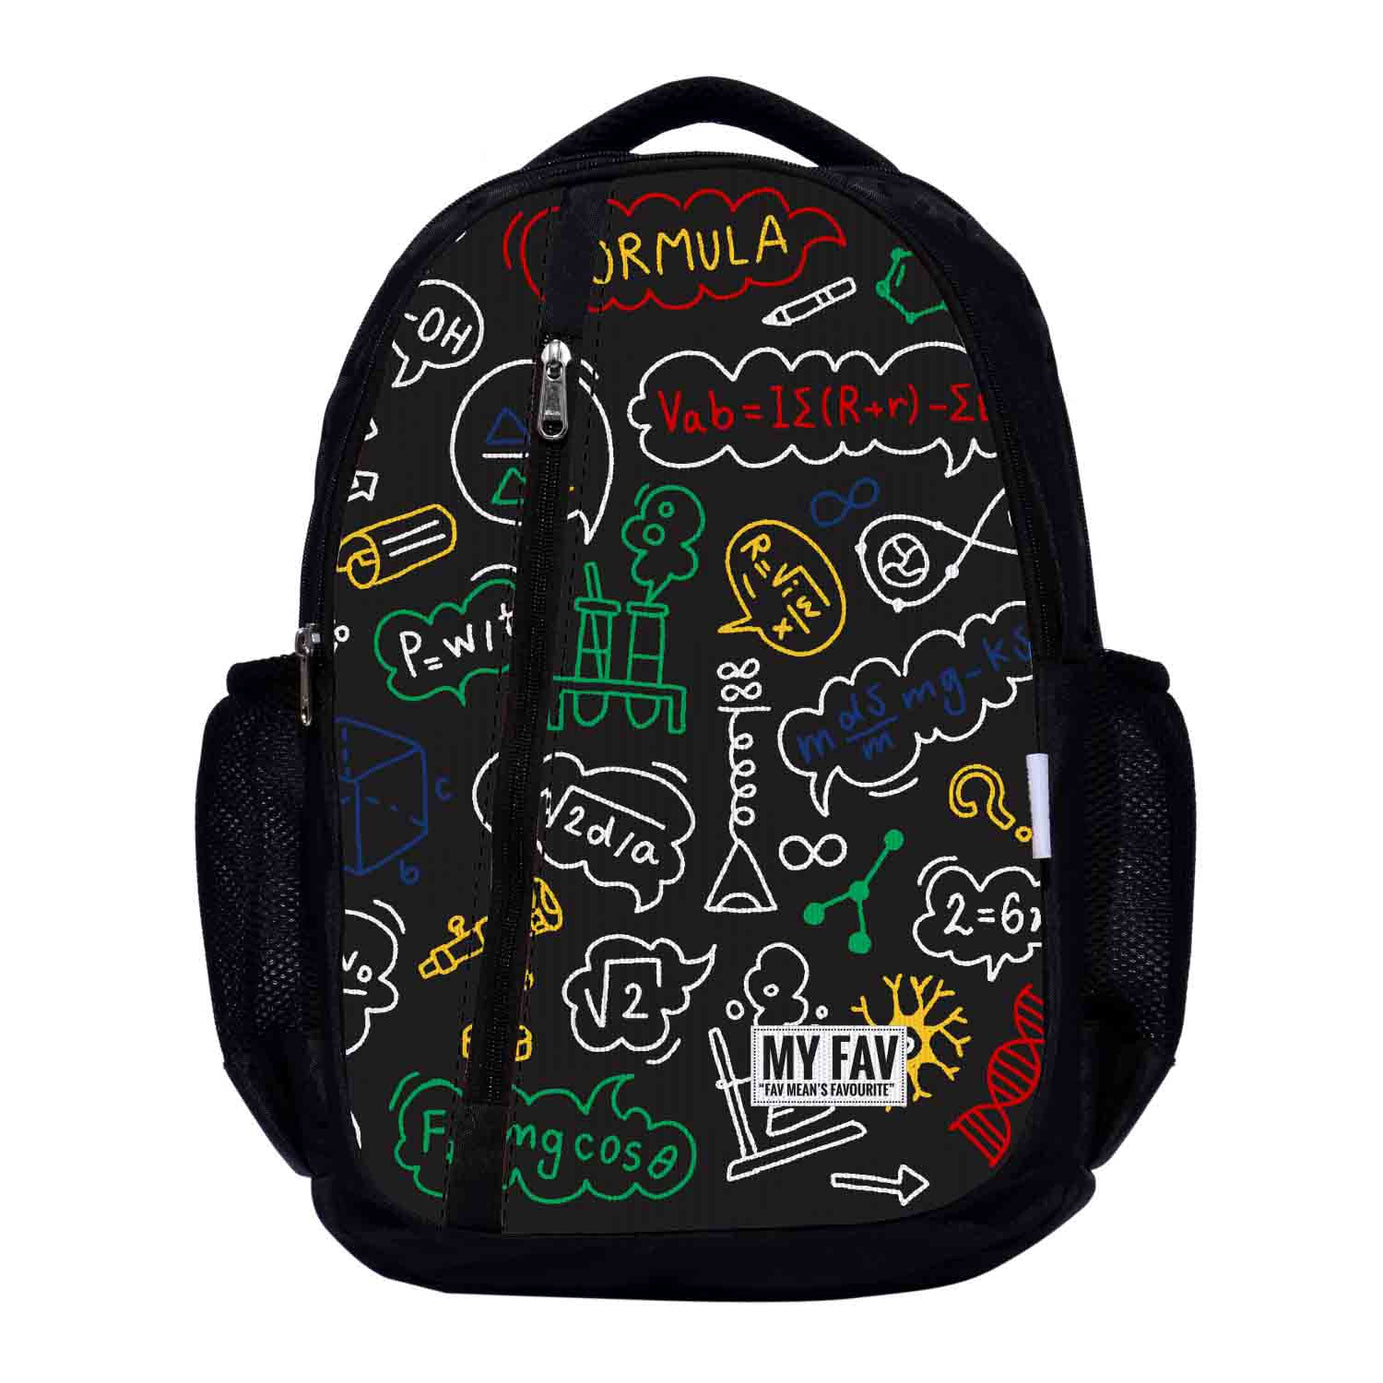 My Fav Alogritham Print Laptop Backpack For Men Women / School Bag for Boys Girls